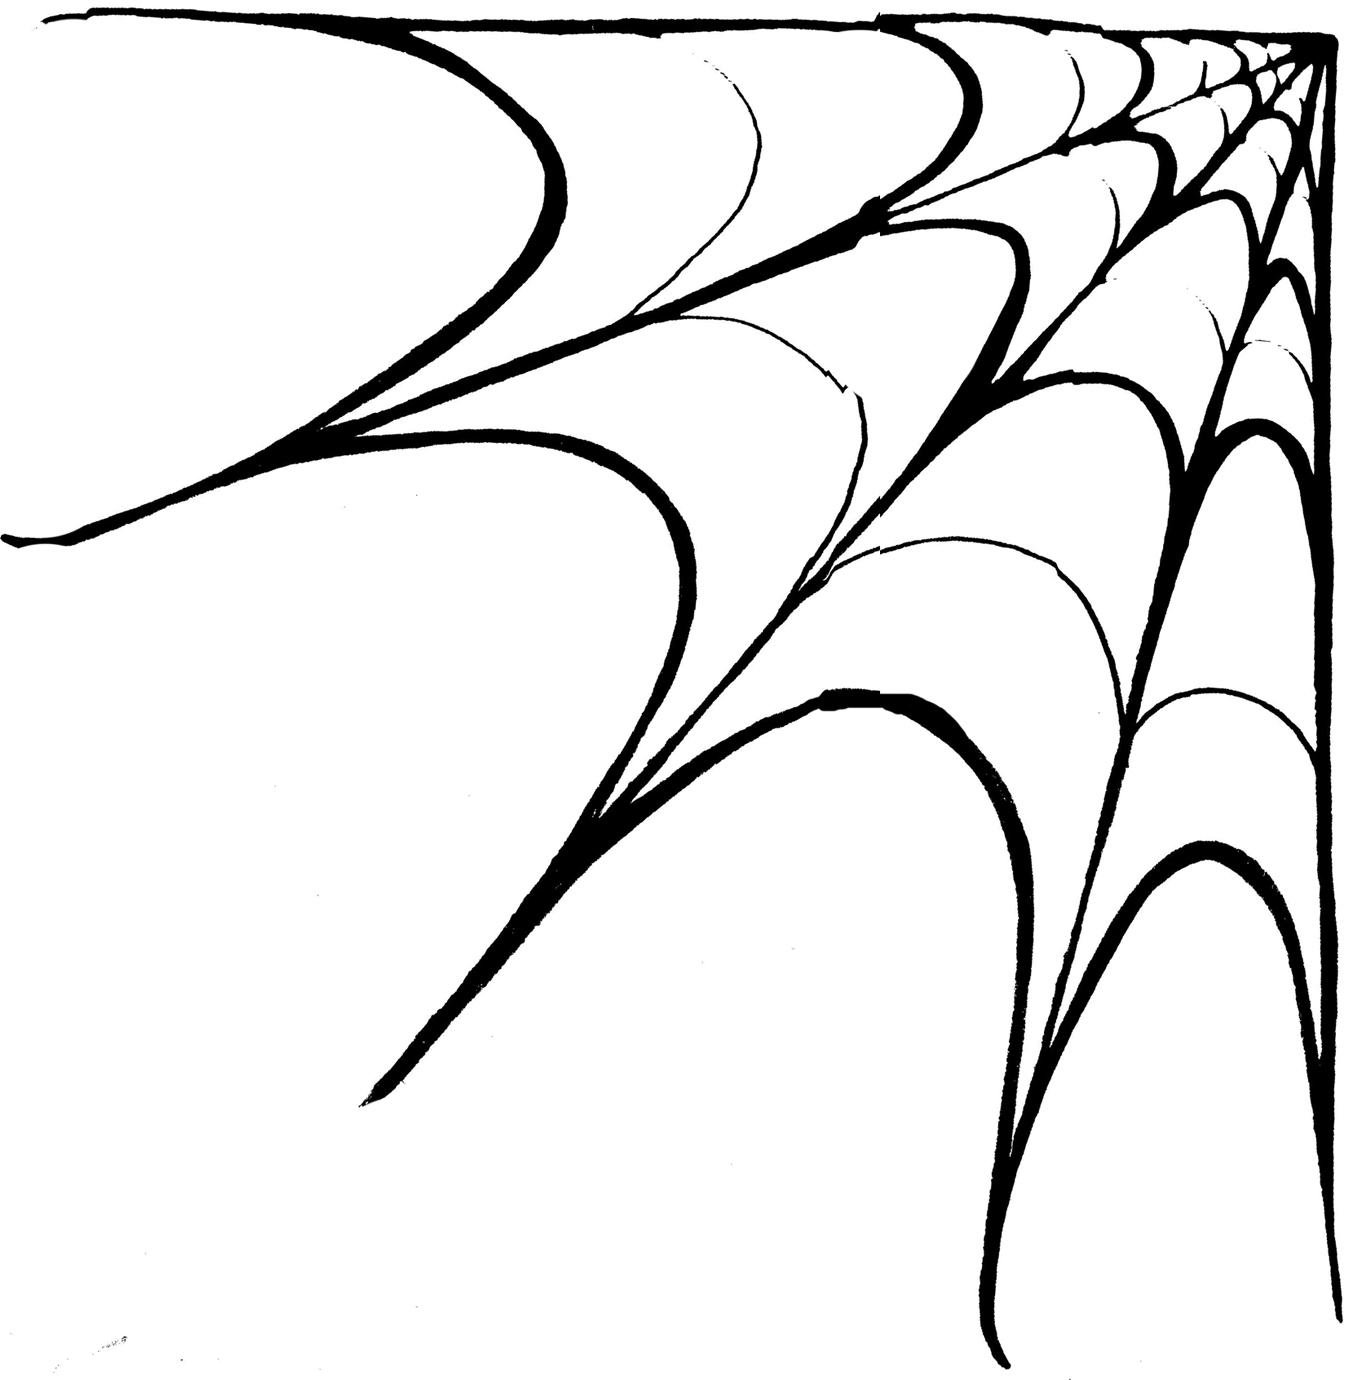 Spiderweb Clip Art - Clipart library